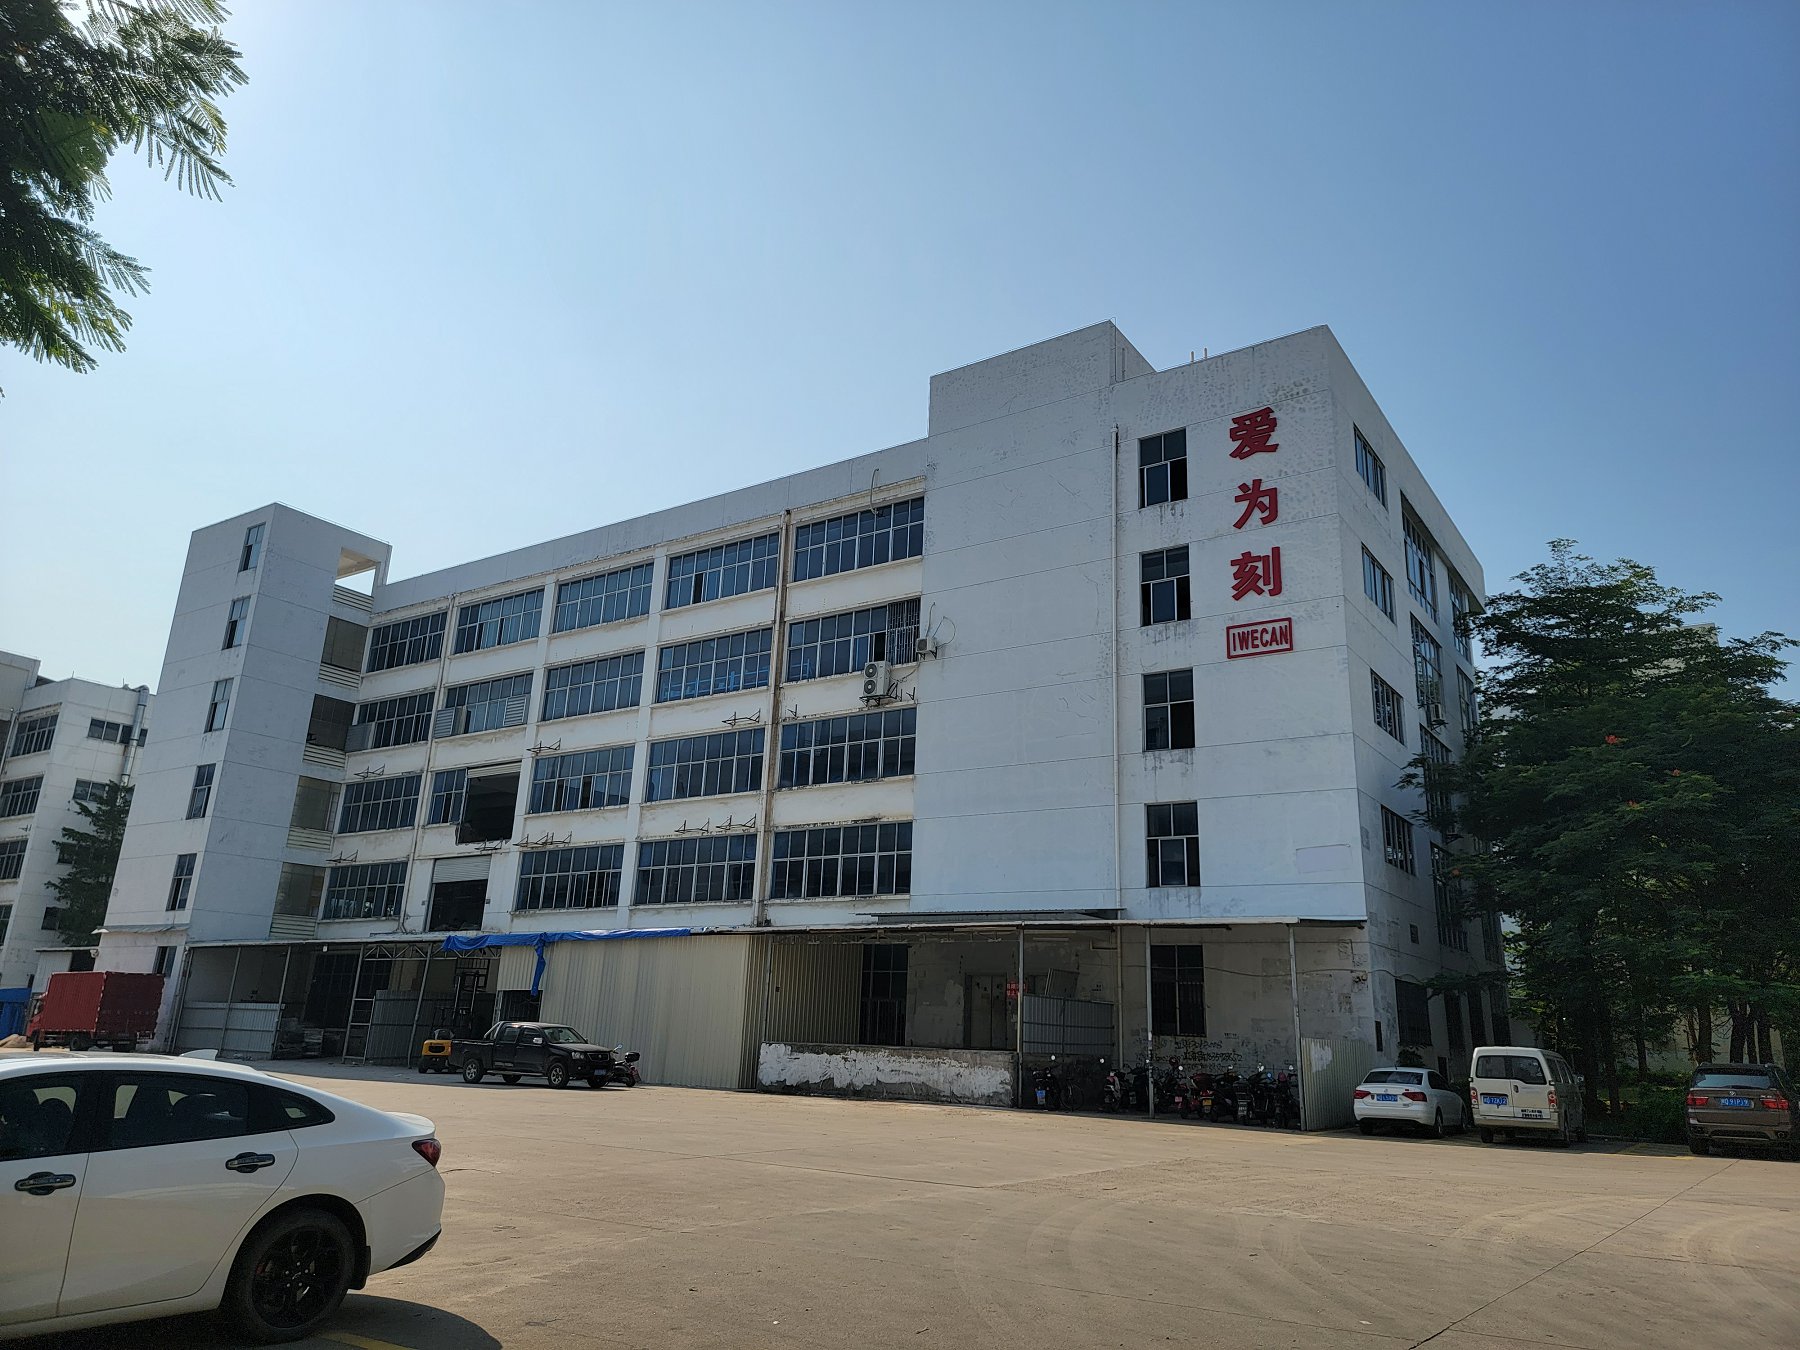 iWECAN building in Xiamen